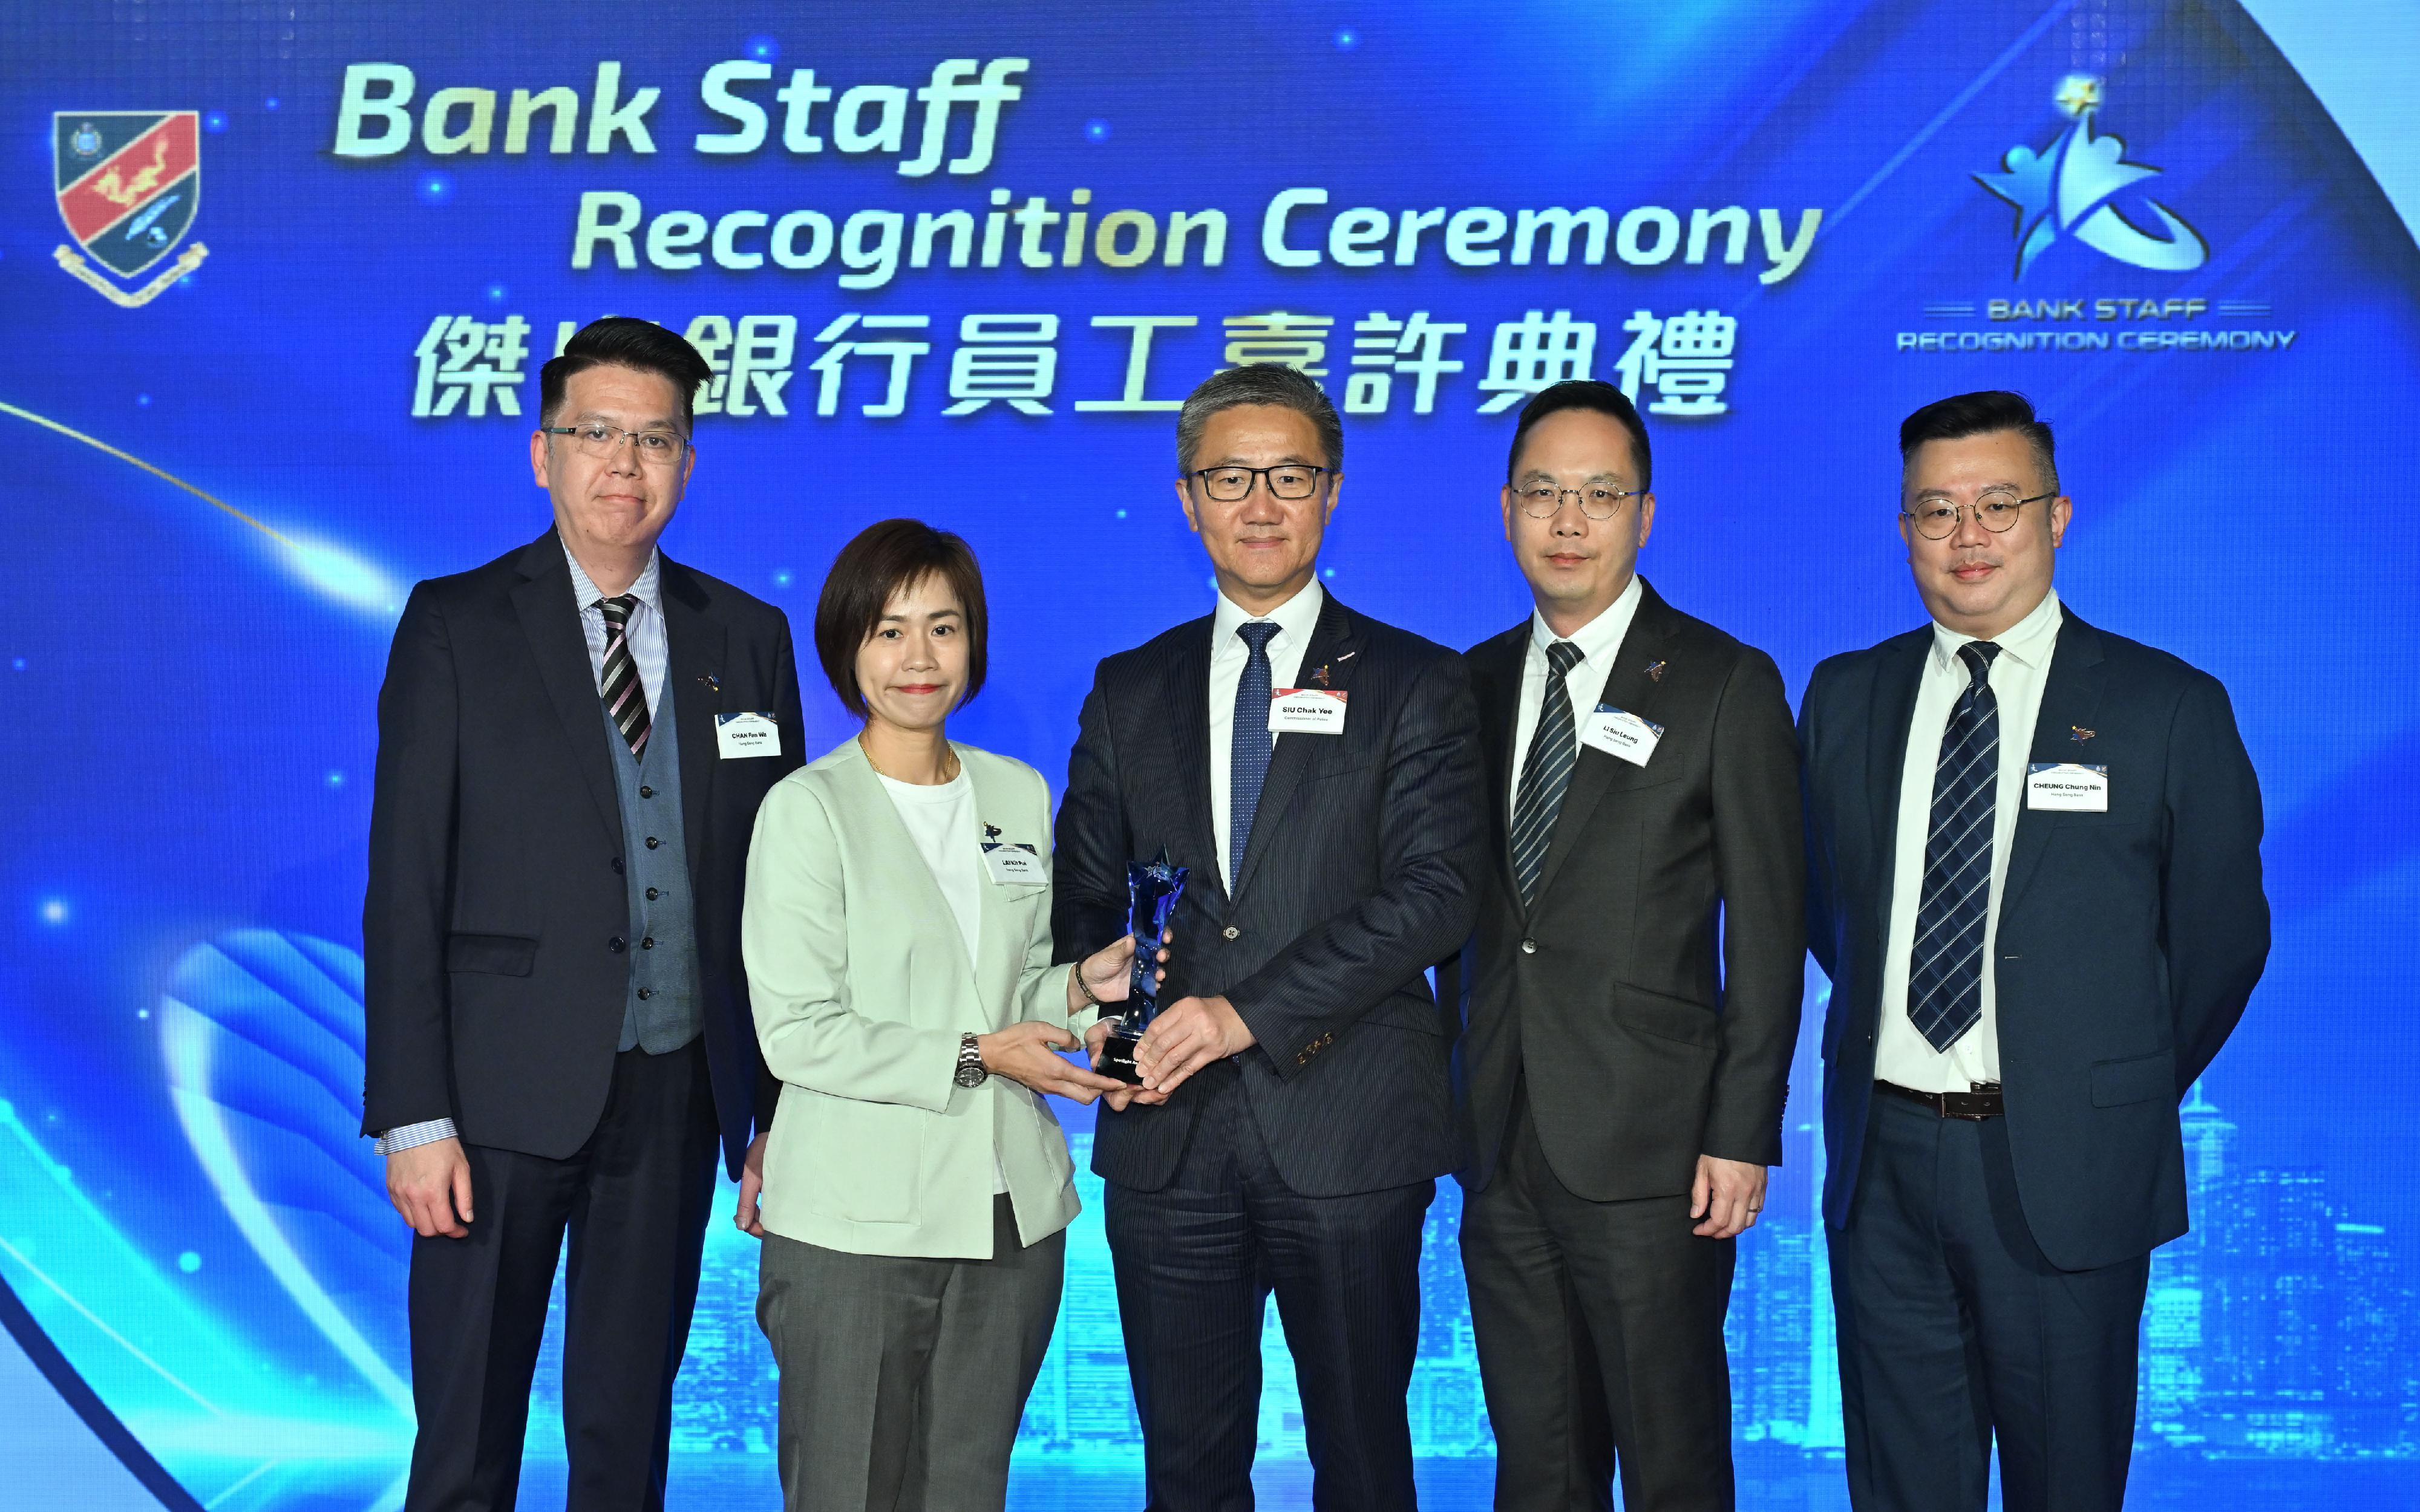 香港警务处今日（三月二十二日）举办「杰出银行员工嘉许典礼」。图示警务处处长萧泽颐（中）颁奖予获得「杰出银行员工大奬」的银行代表。